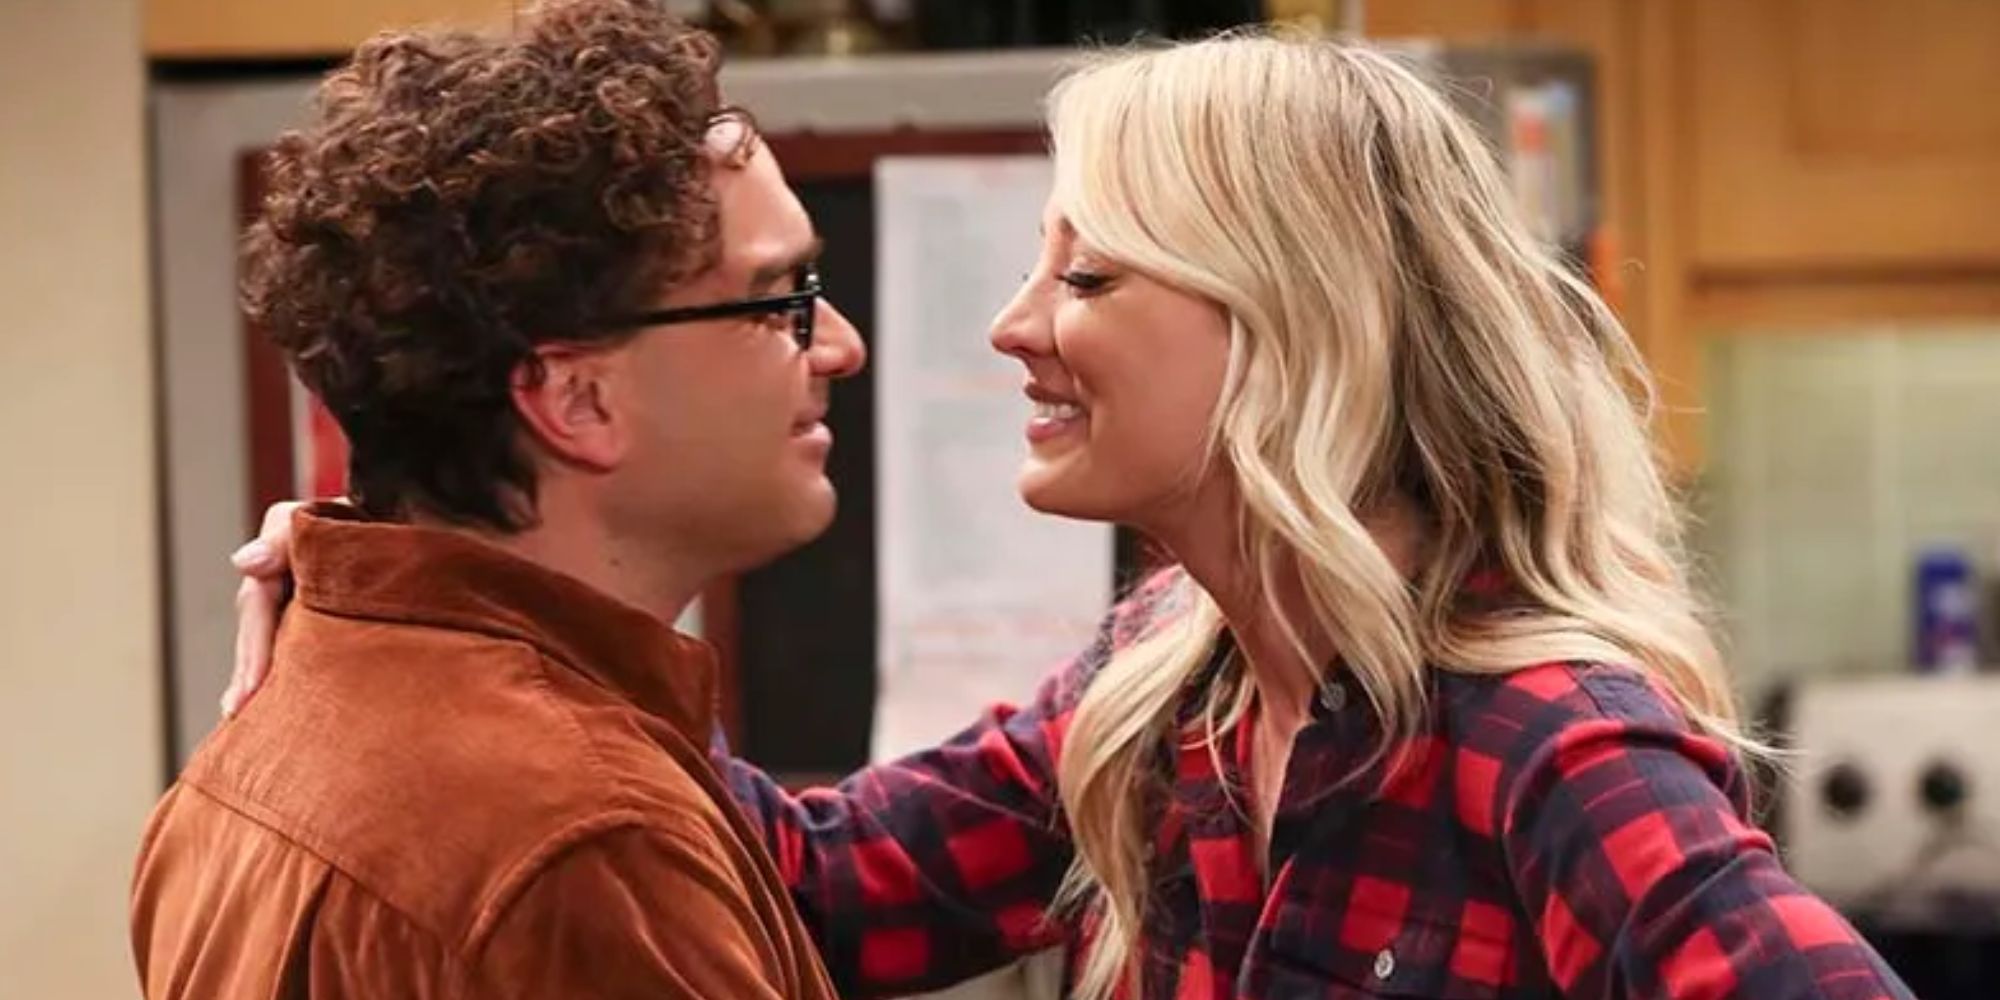 Kaley Cuoco as Penny smiling at Johnny Galecki as Leonard in The Big Bang Theory